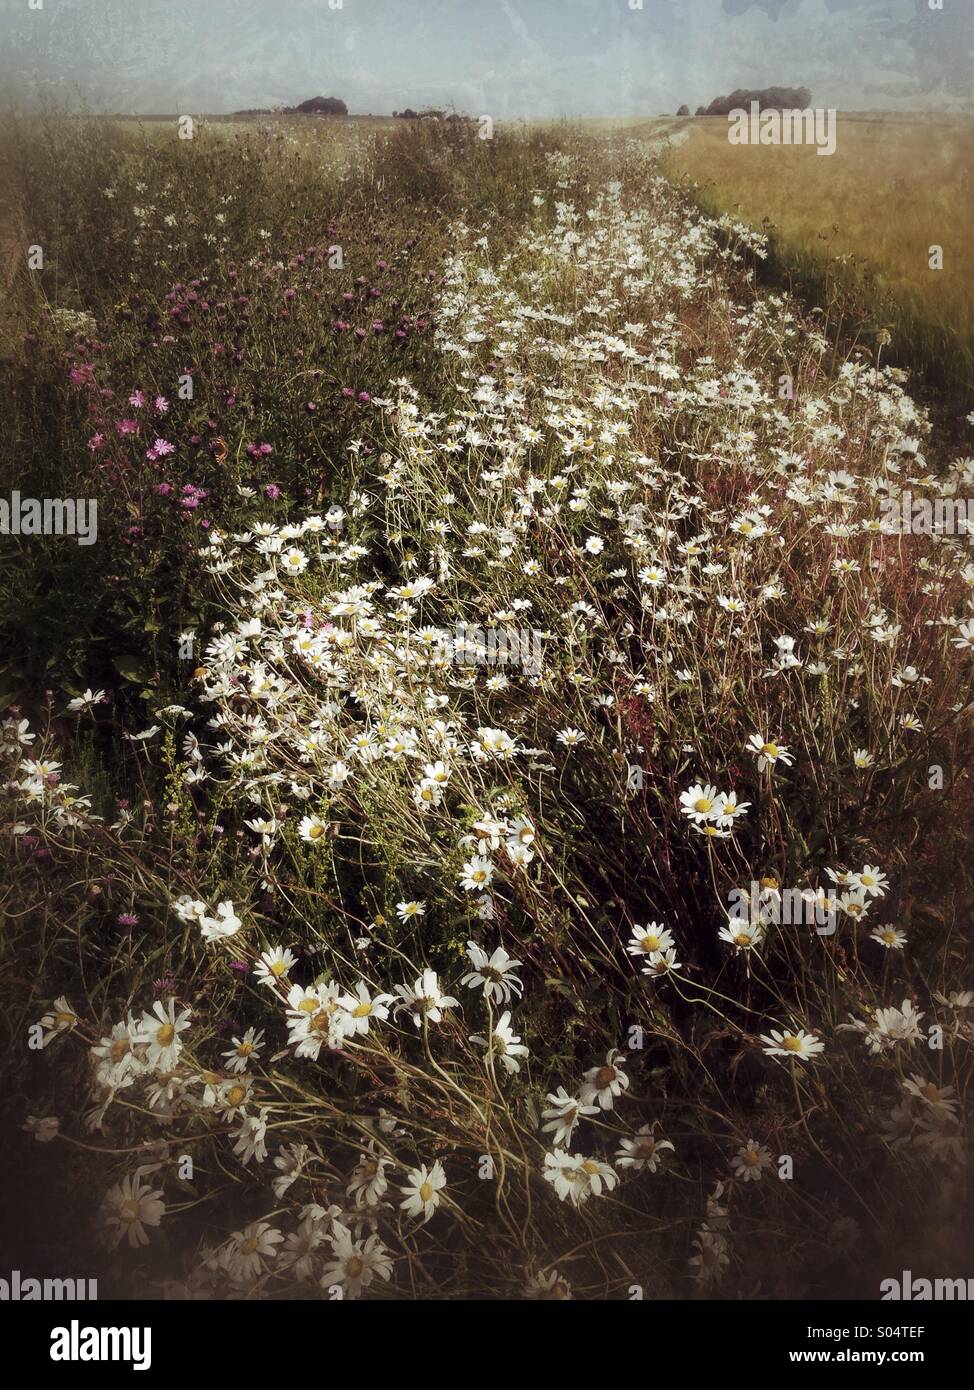 Ox eye daisies poussent à l'état sauvage dans un champ Marge, UK Banque D'Images